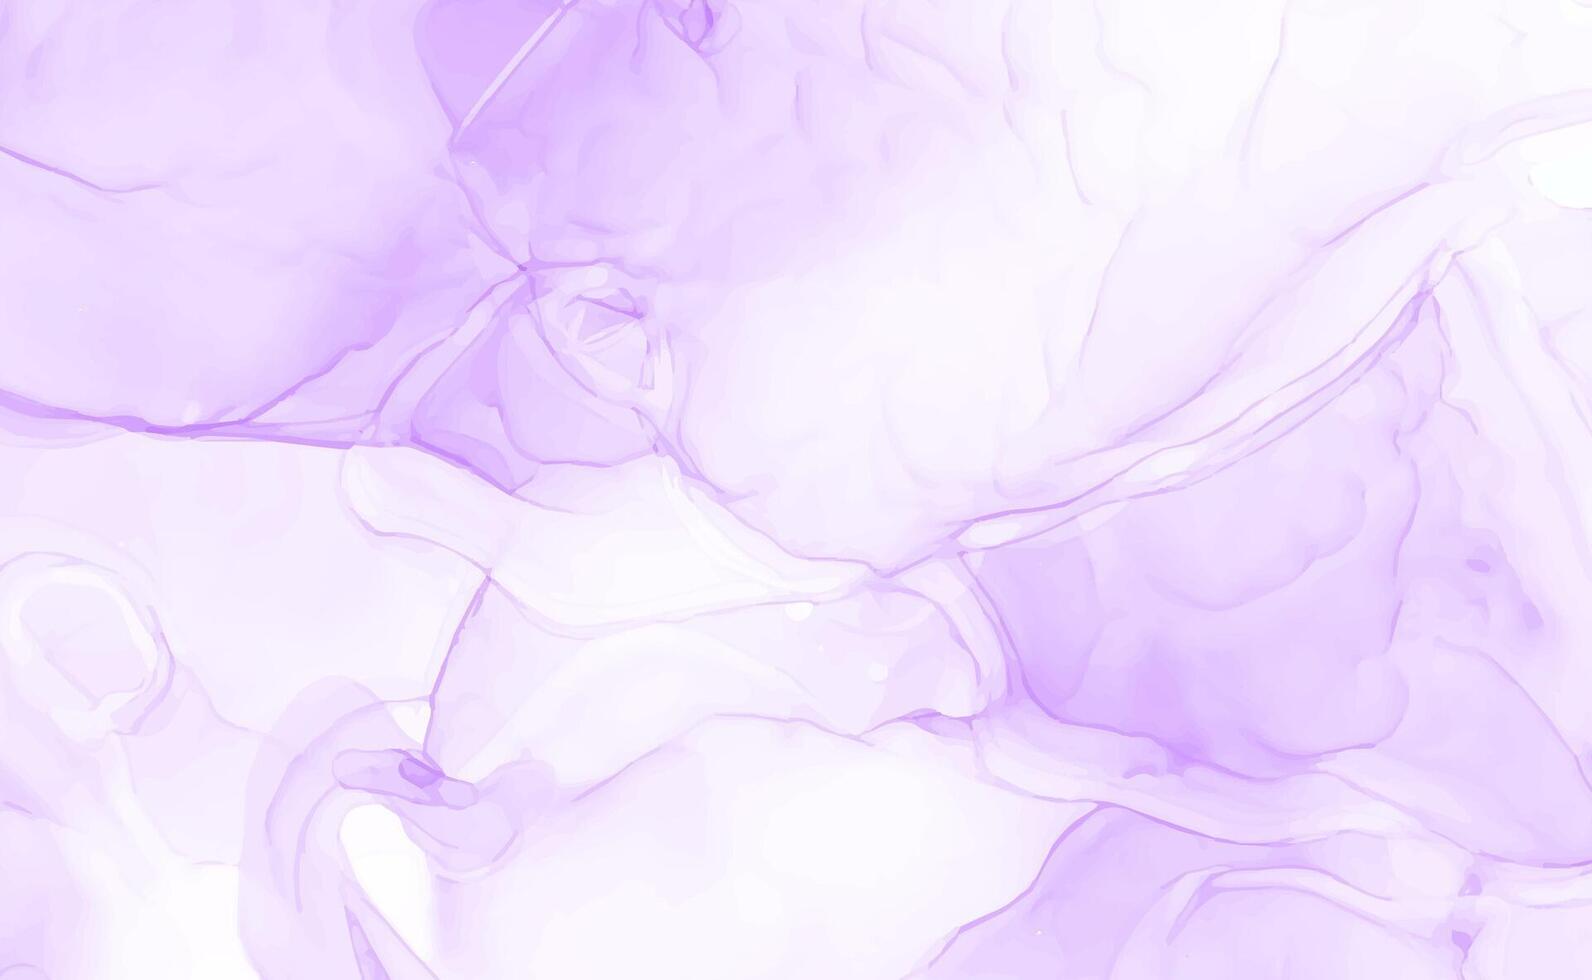 leggero viola acquerello acrilico marmo backgound vettore